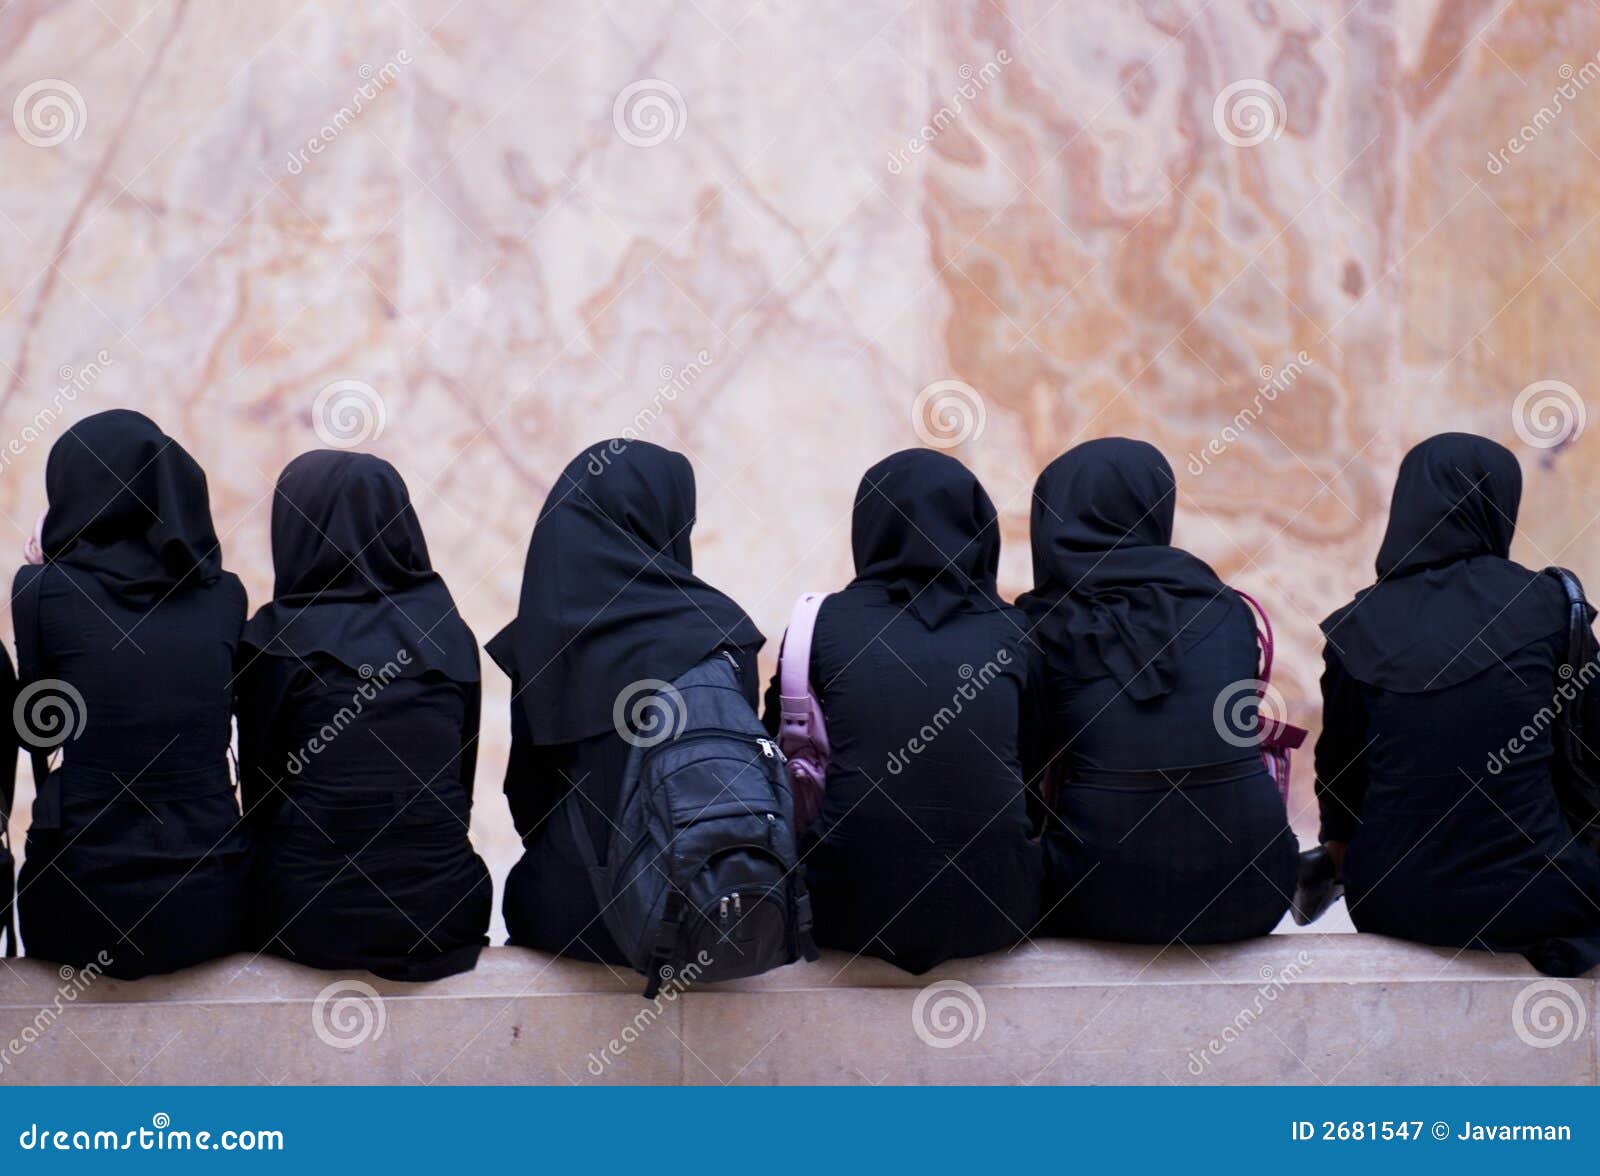 2,270 Iranian Women Stock Photos